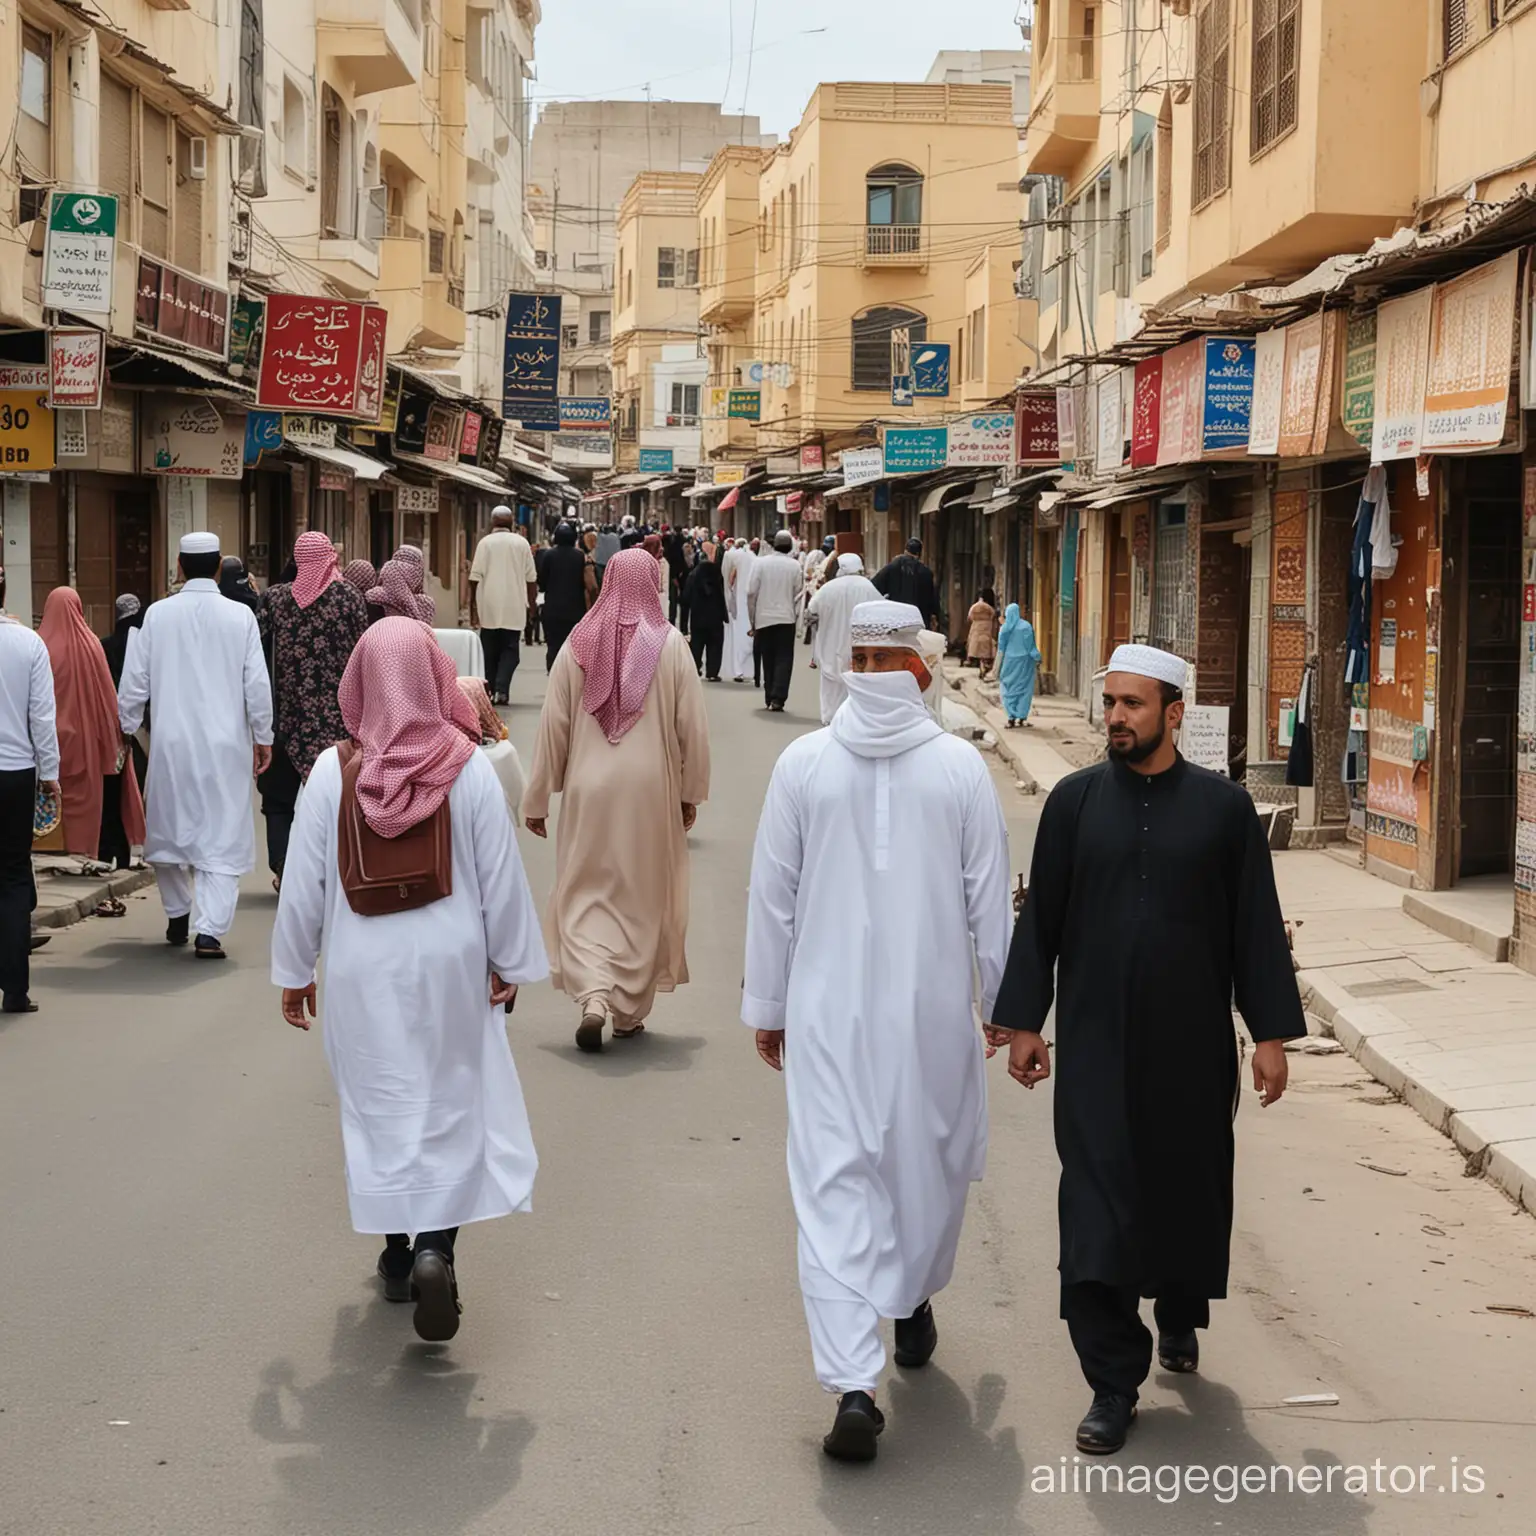 walking on a muslim street